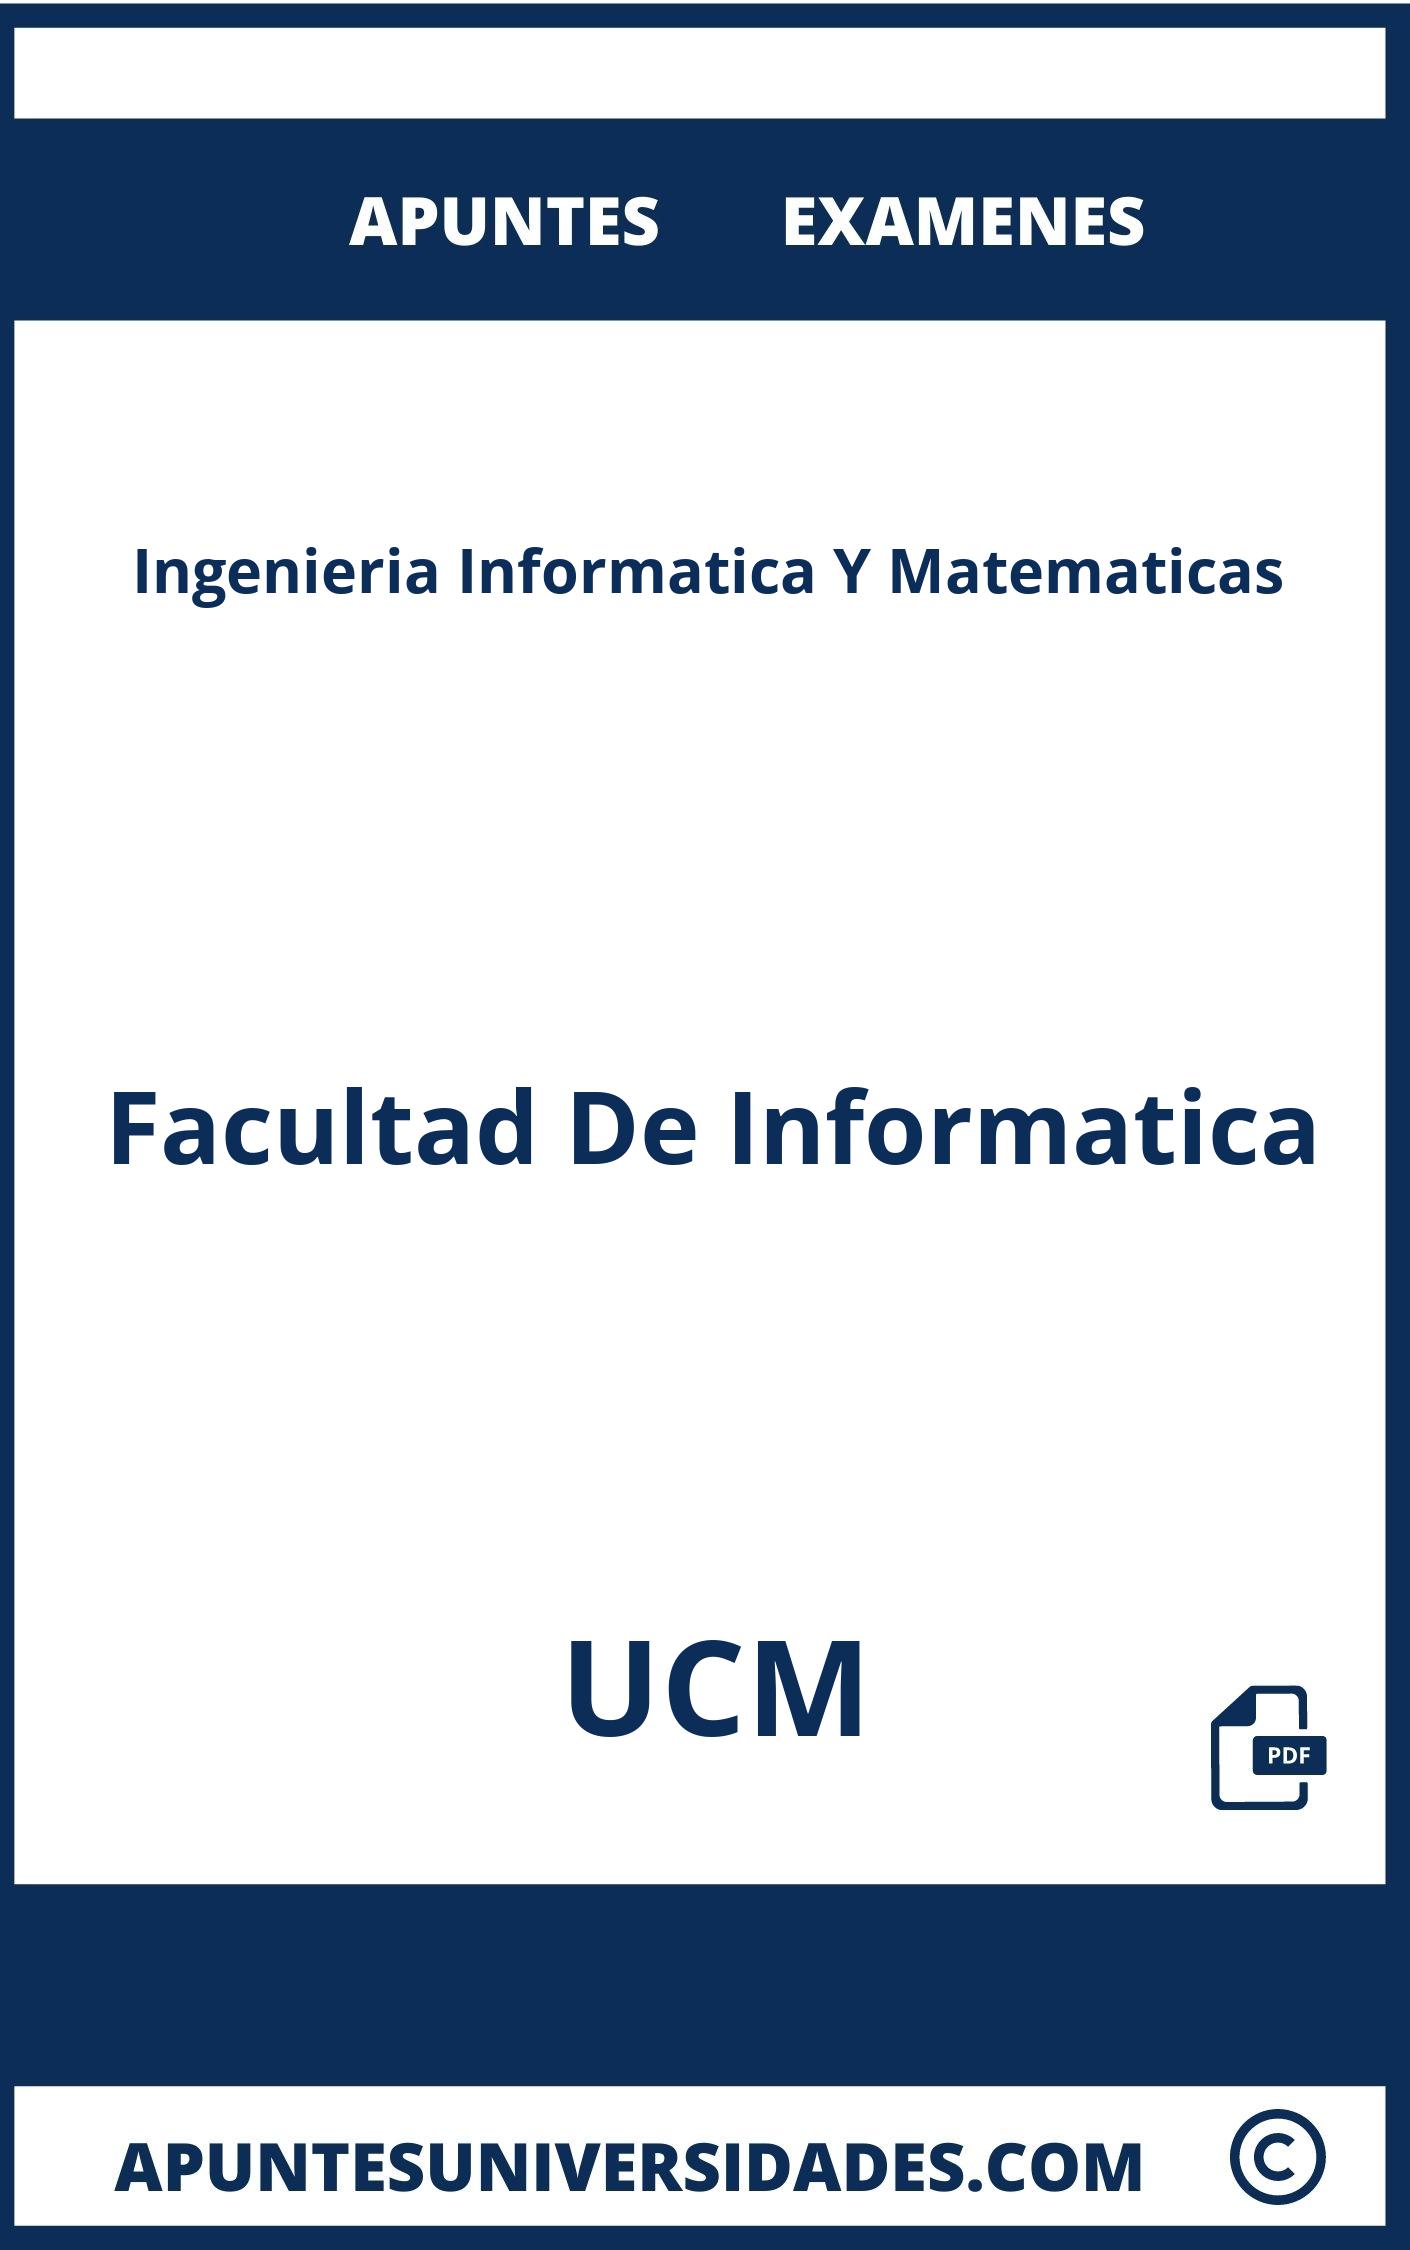 Apuntes Examenes Ingenieria Informatica Y Matematicas UCM